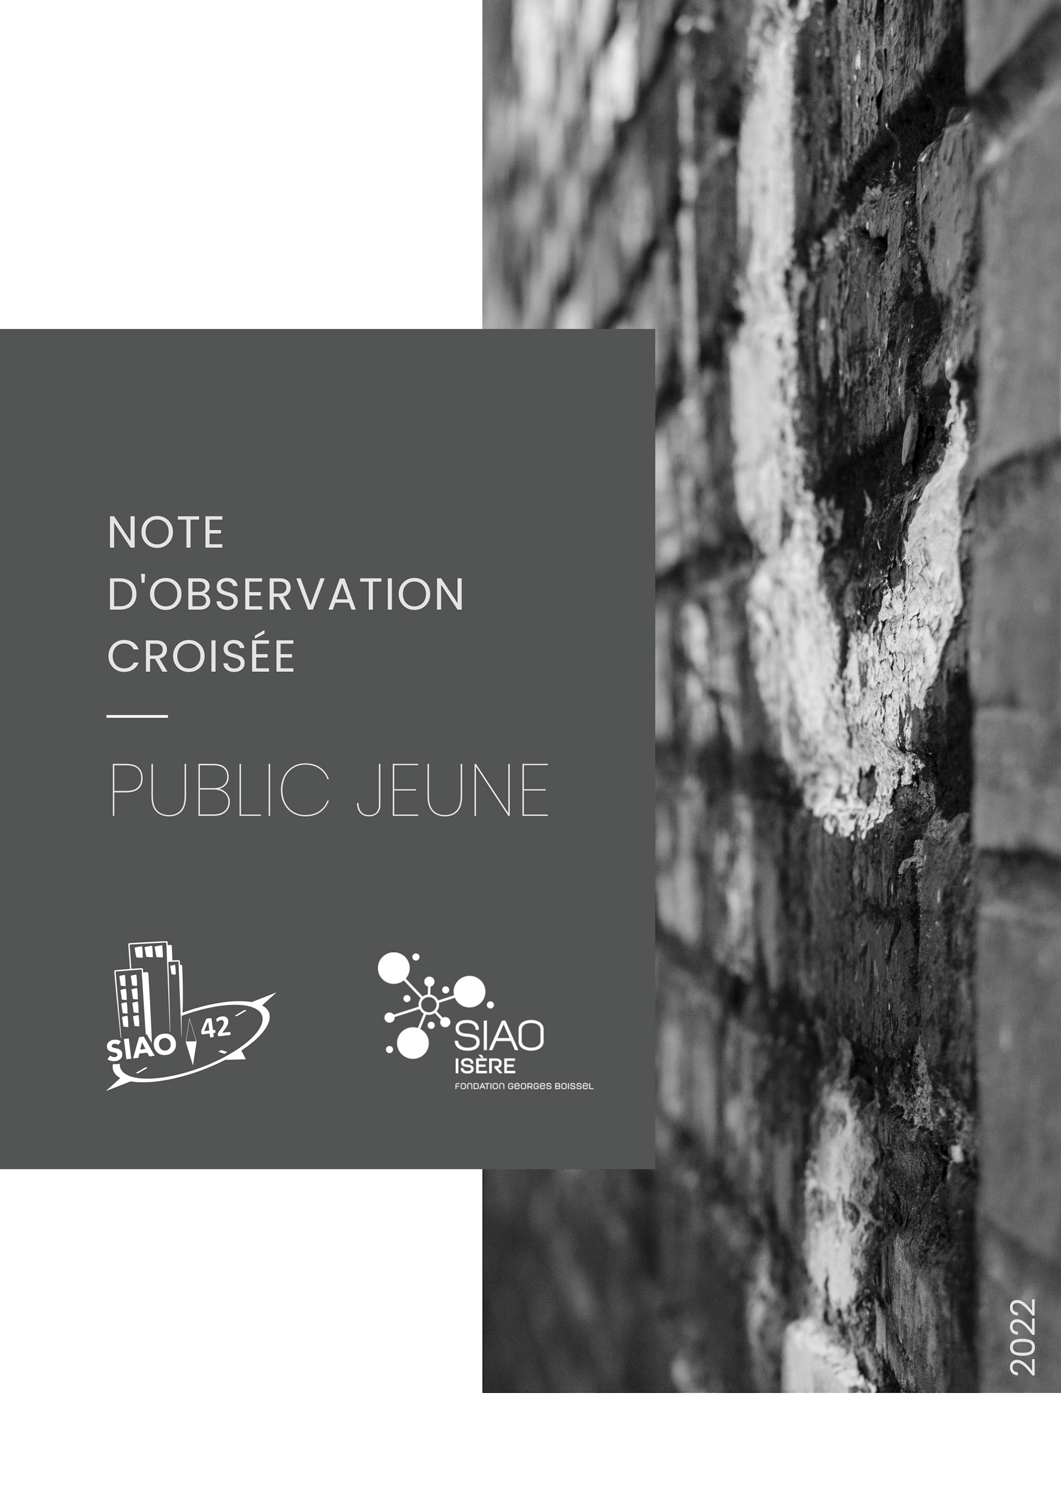 SIAO 38 Isère / SIAO 42 Loire - Note d'observation croisée "Public Jeune"